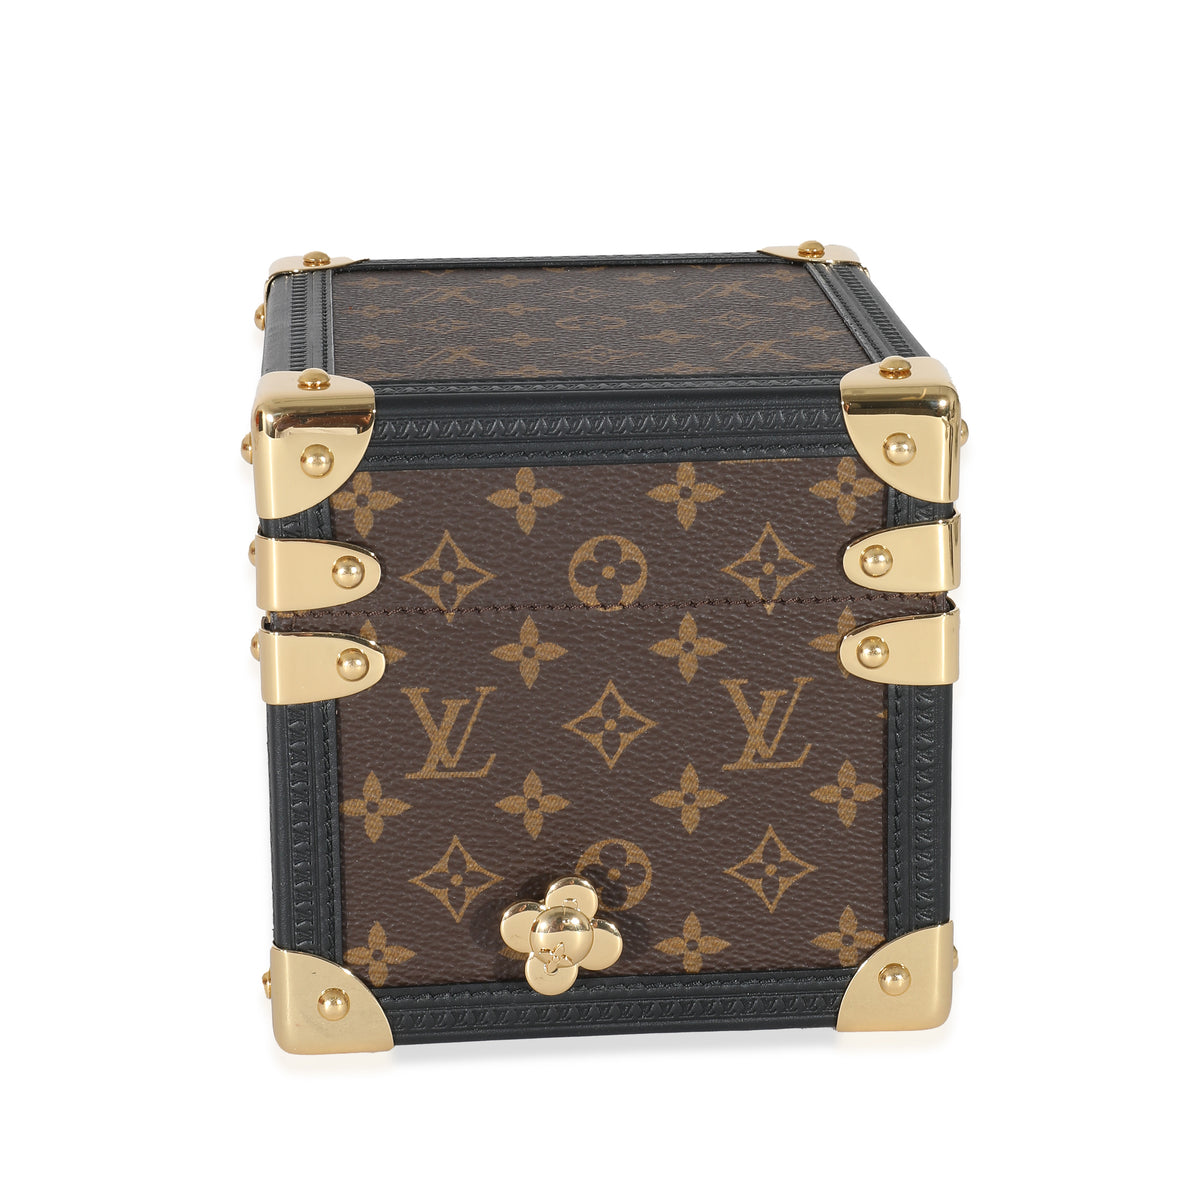 Authentic Louis Vuitton Vivienne Monogram LV Bracelet Gold Luxury Accessory